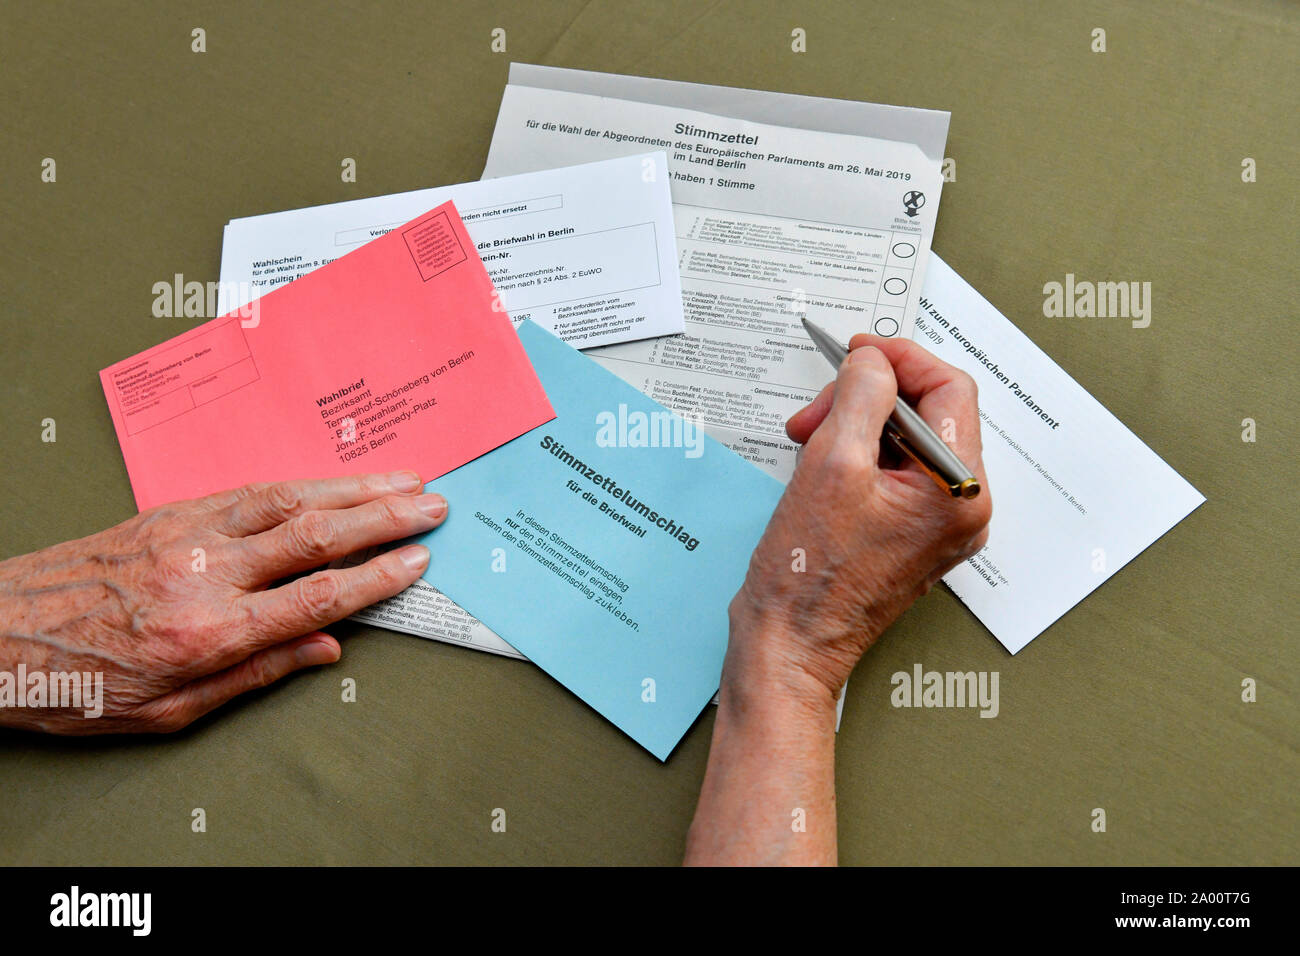 Briefwahlunterlagen Stimmzettel mit, fuer die Wahl zum 9. Europaeischen Parlament am 26. Mai 2019 Foto Stock